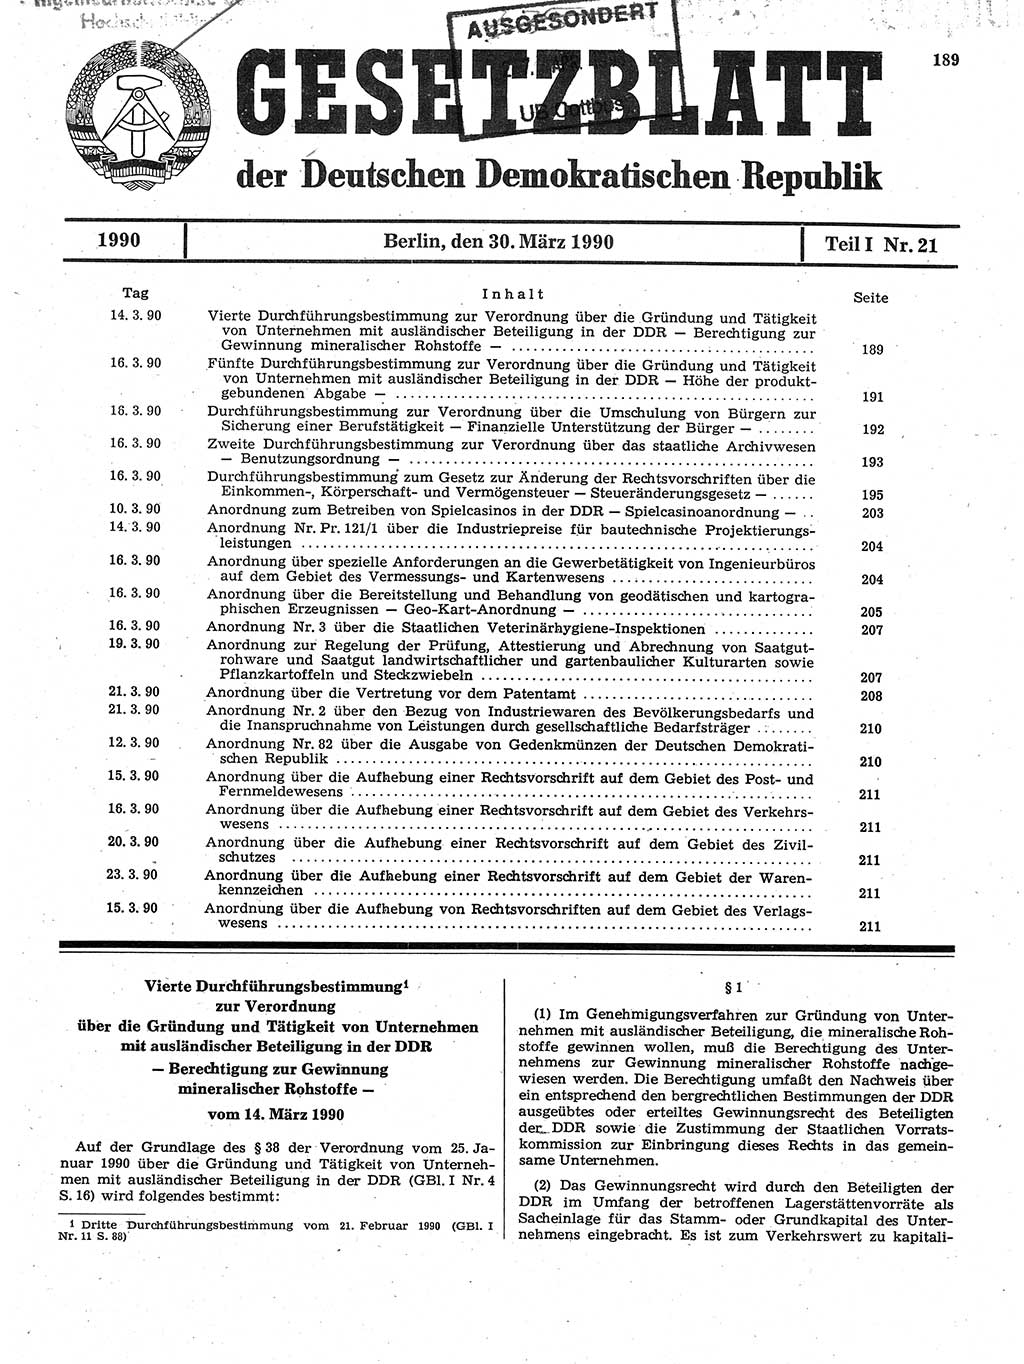 Gesetzblatt (GBl.) der Deutschen Demokratischen Republik (DDR) Teil Ⅰ 1990, Seite 189 (GBl. DDR Ⅰ 1990, S. 189)